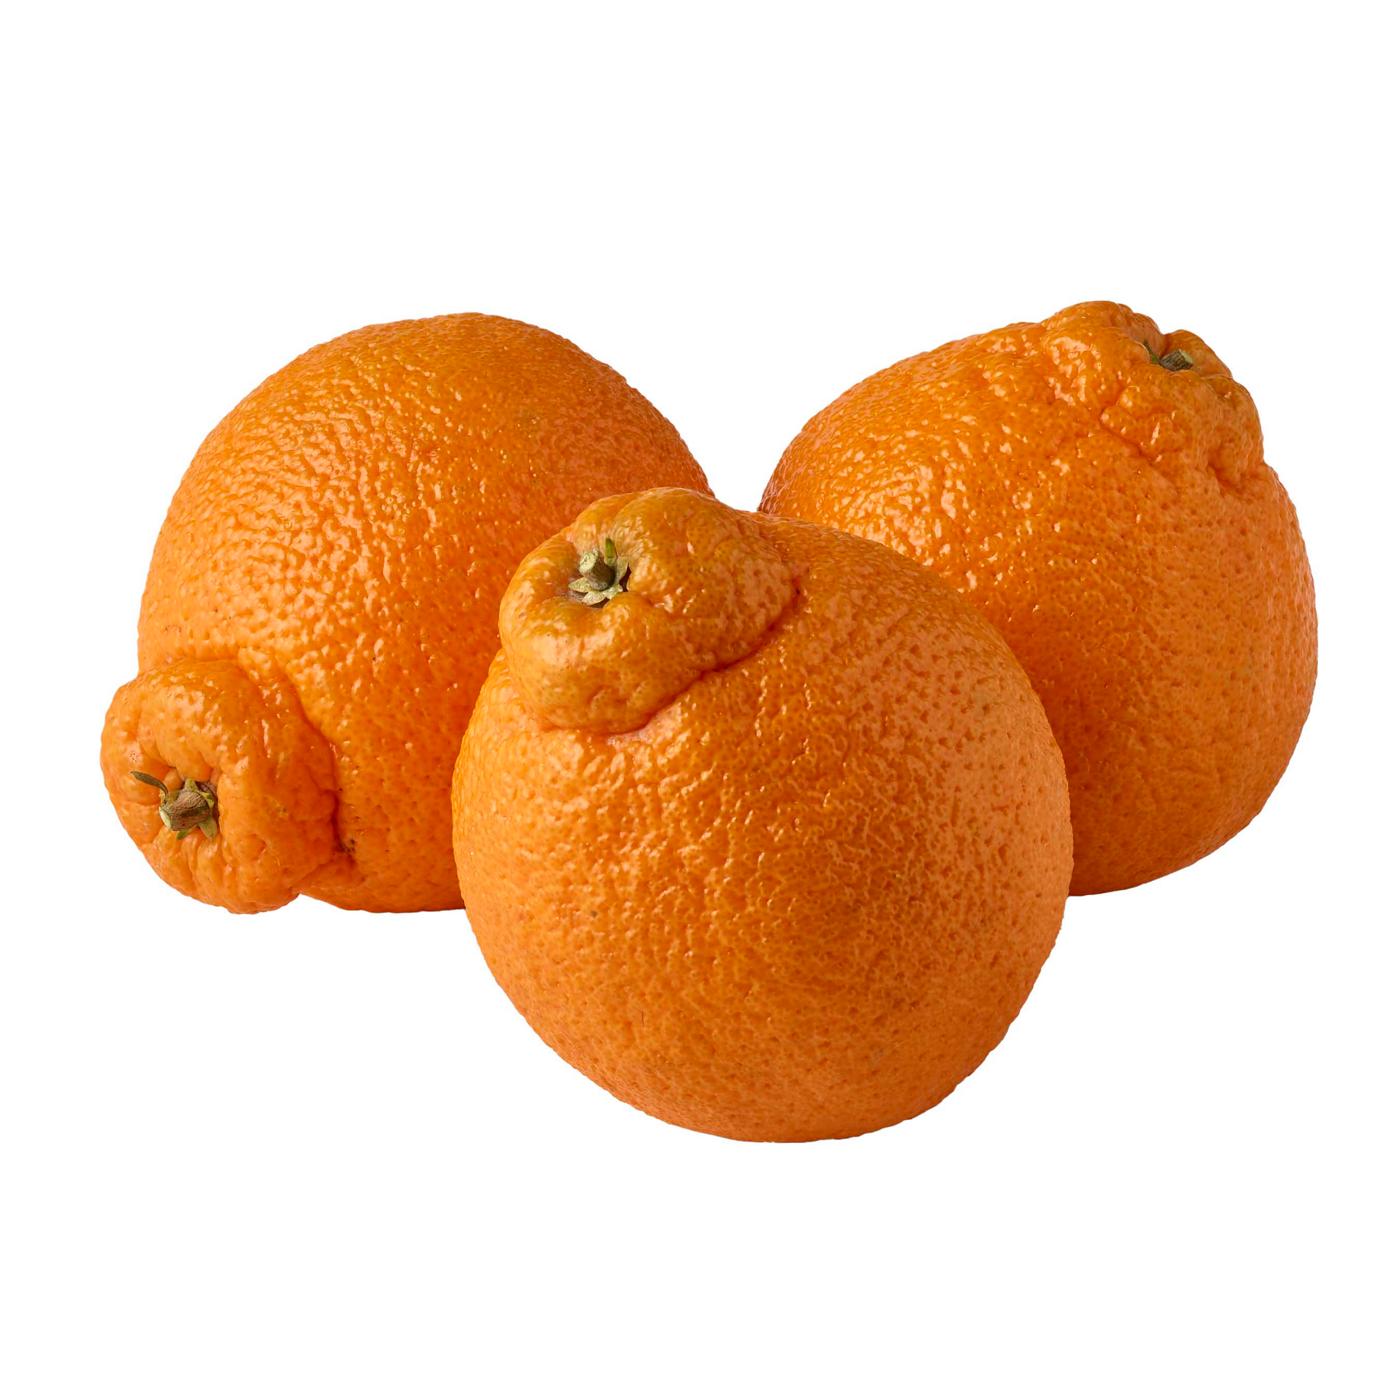 H-E-B Fresh Peeled Whole Mandarin Oranges - Large